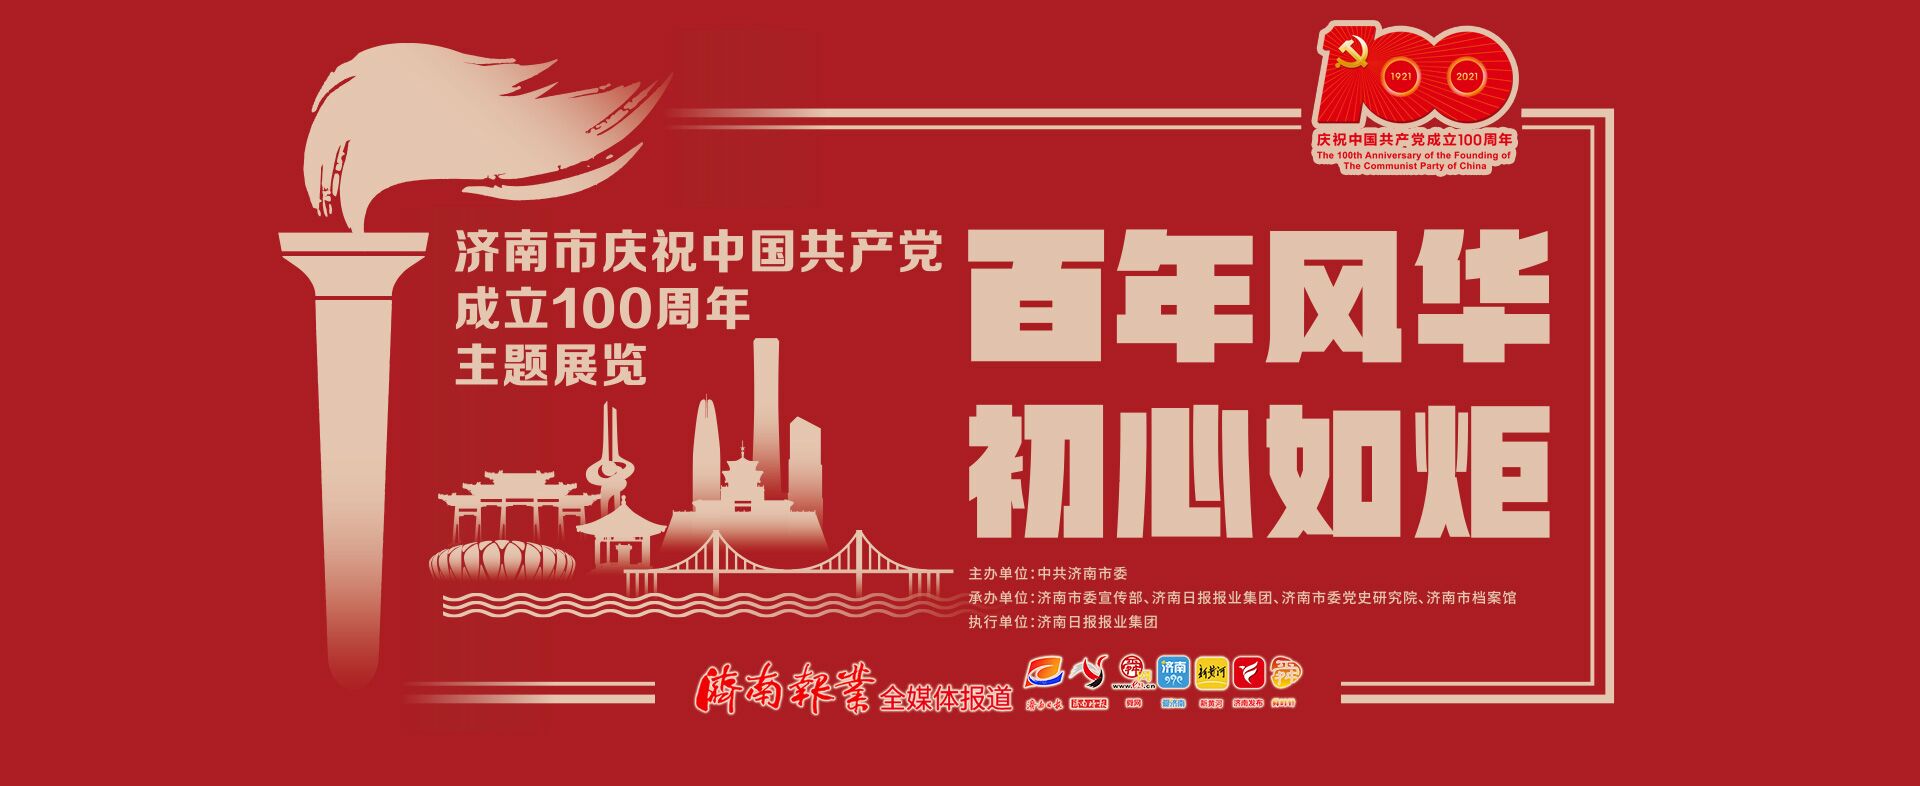 【百年风华 初心如炬】济南市庆祝中国共产党成立100周年主题展激起“白发族”共鸣